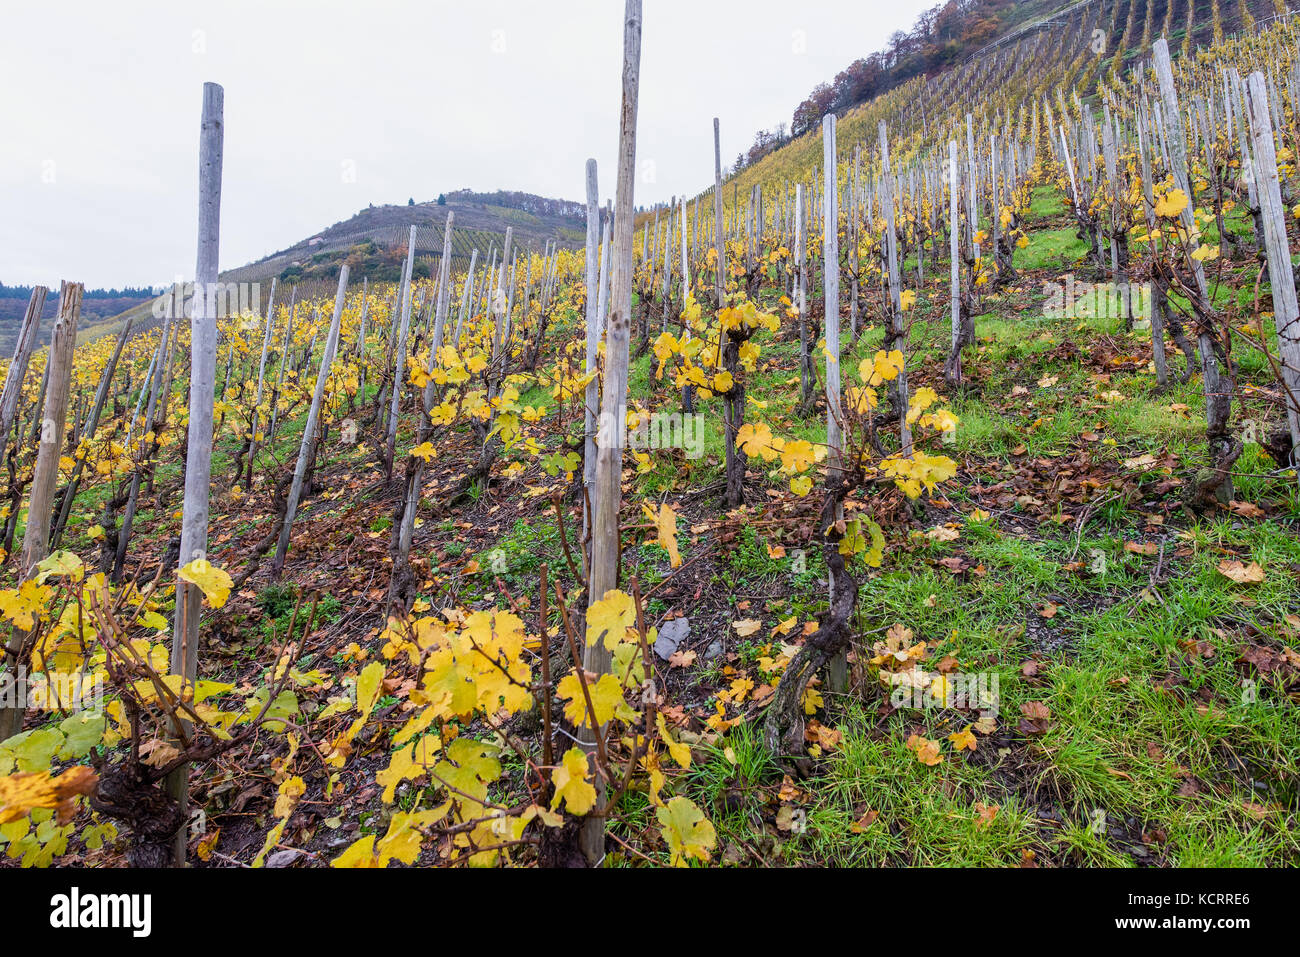 La industria alemana del vino: viñas viejas en Maximiner Herrenberg, Longuich, Mosel, Alemania Foto de stock